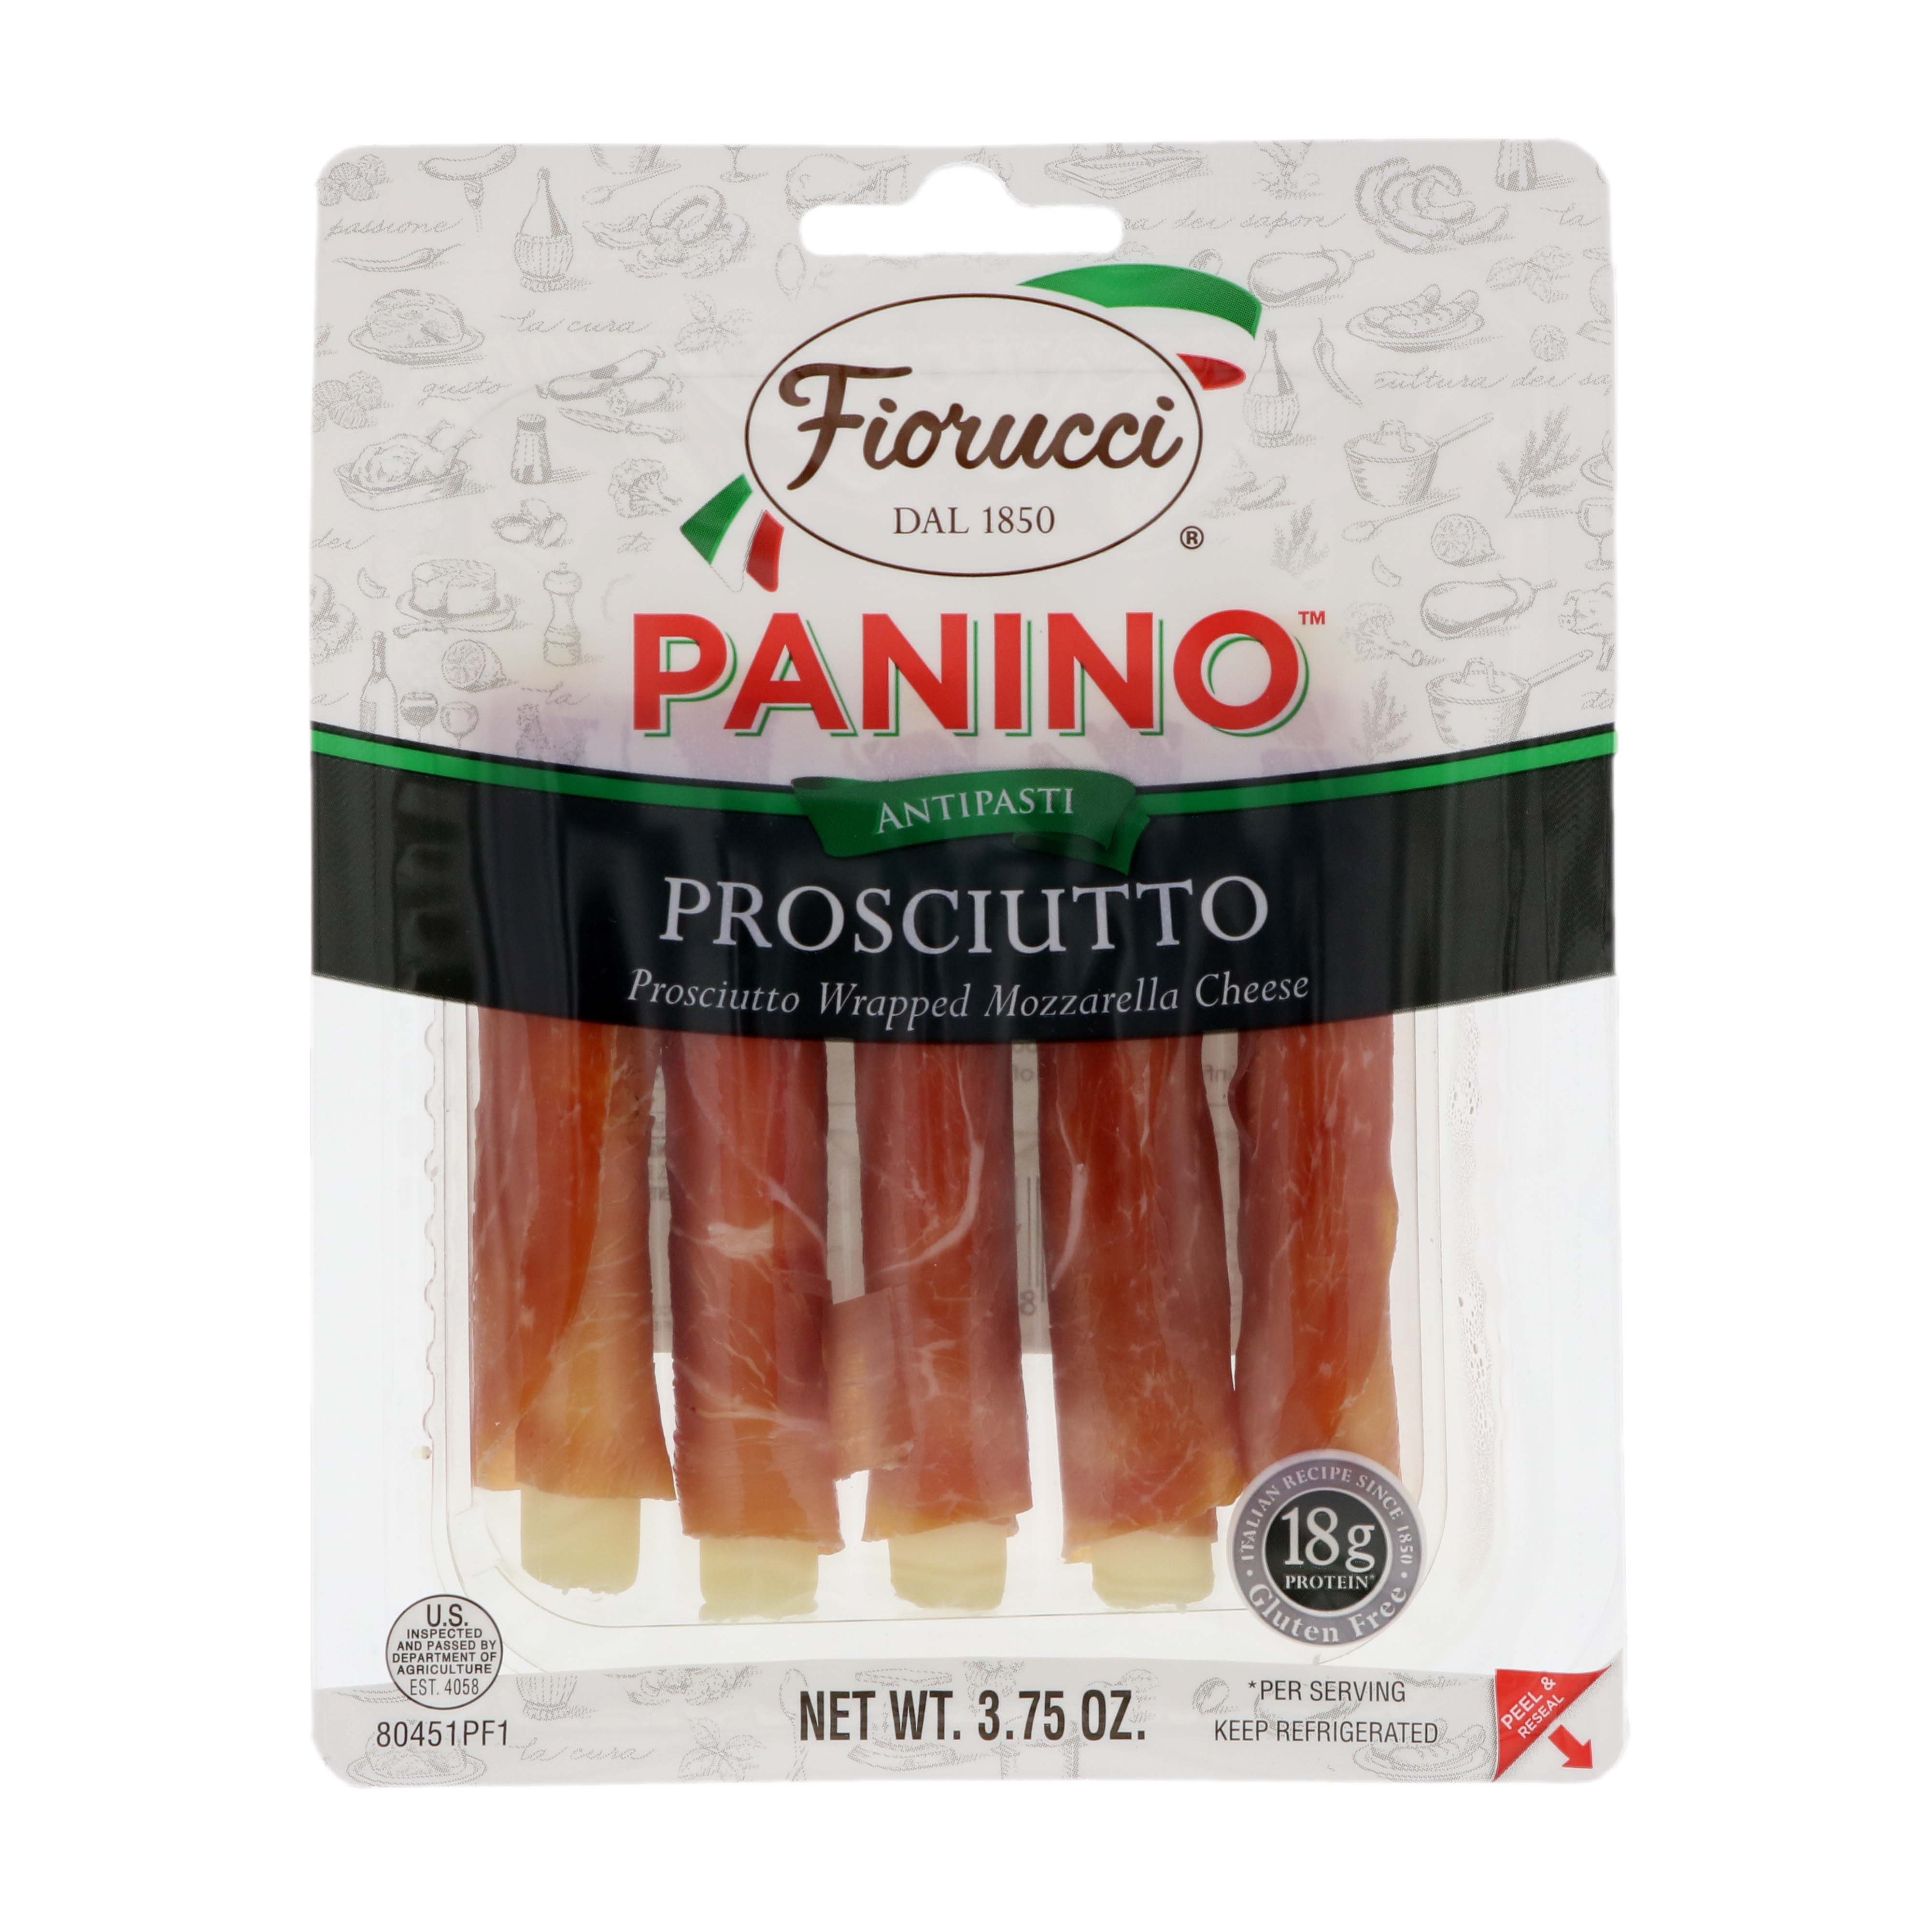 Fiorucci Panino Prosciutto - Shop Cheese at H-E-B